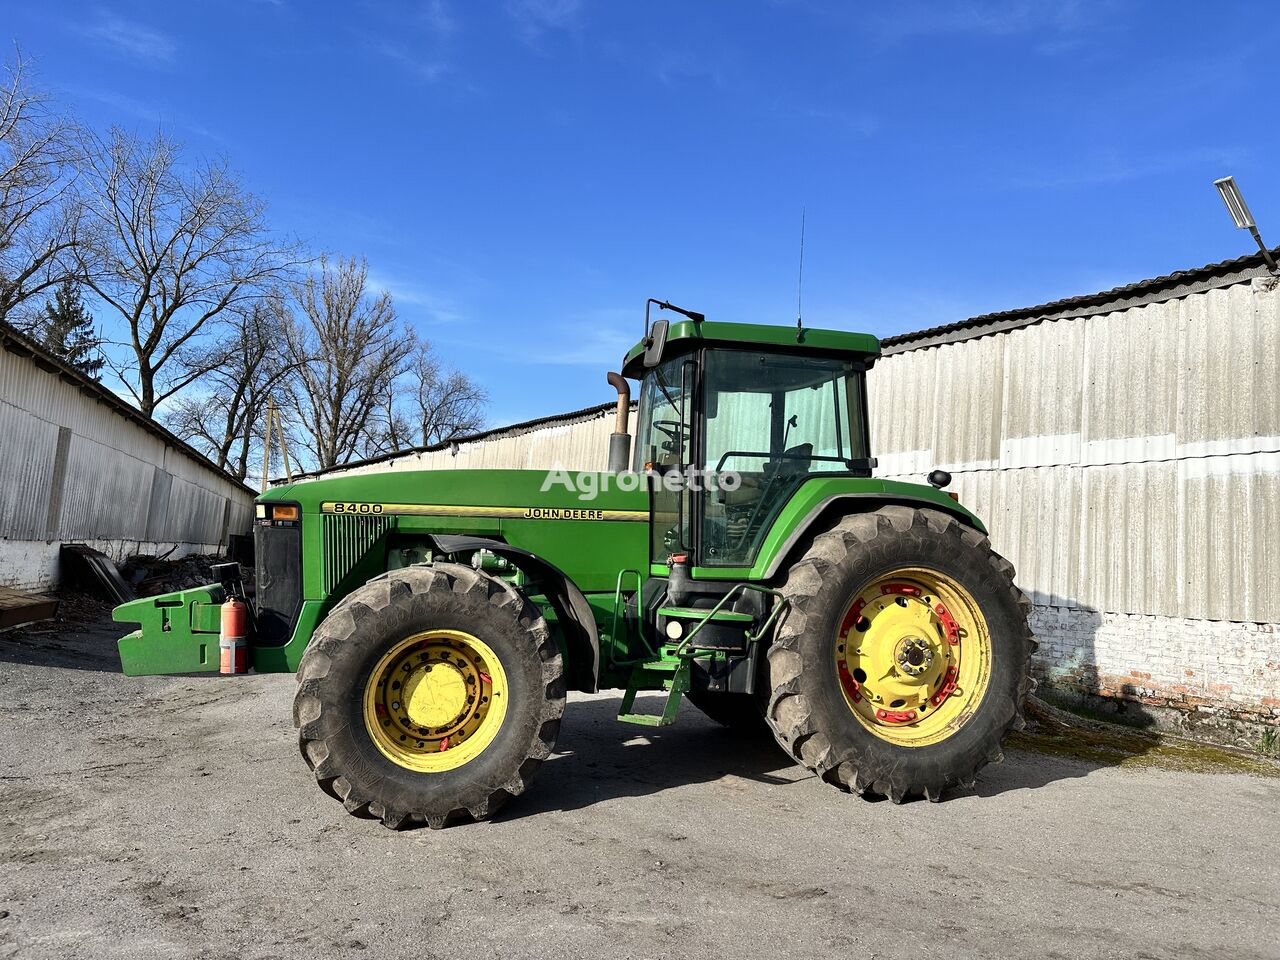 John Deere 8400 wheel tractor